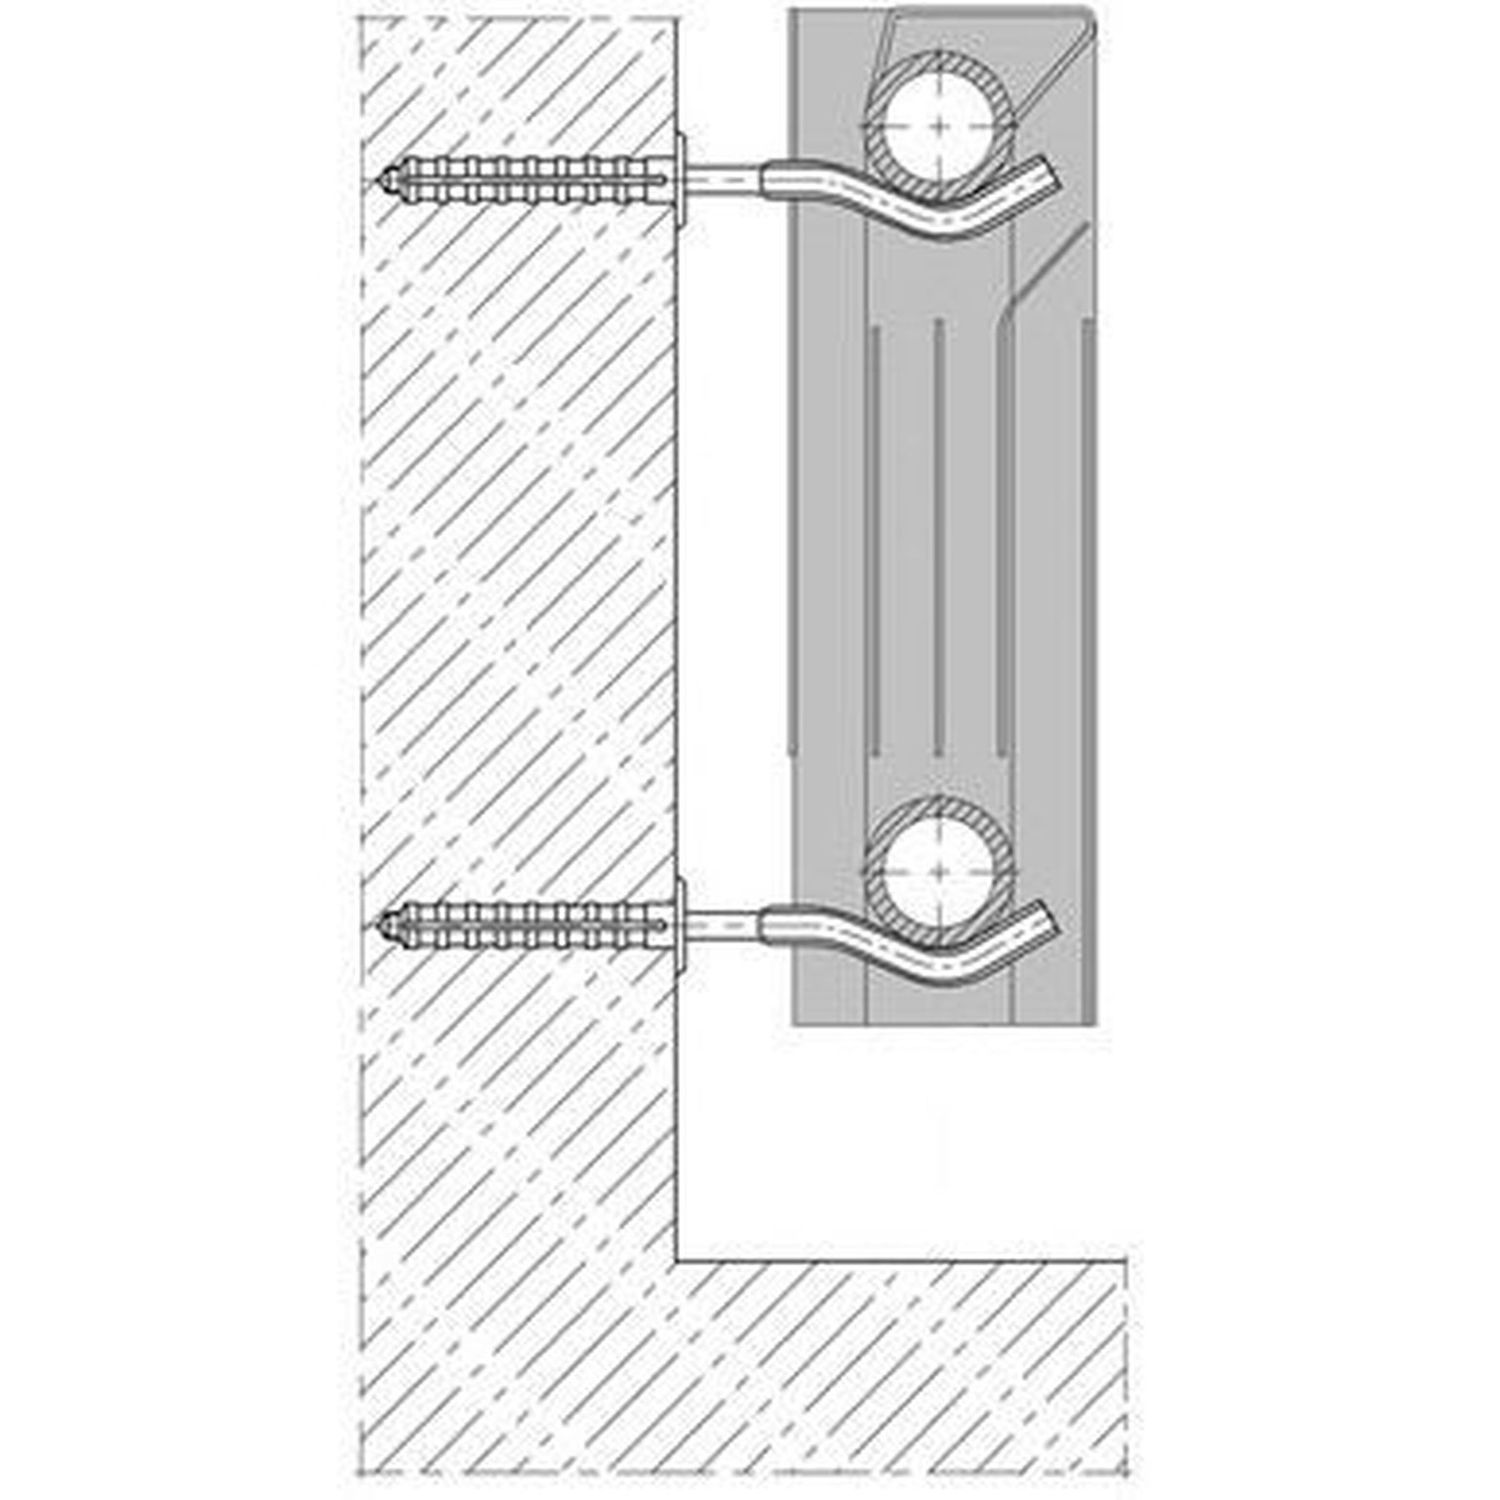 Кронштейн секційного радіатора CRISTAL NS-1011 штирковий оцинкований з дюбелем ф9х170мм (кратно 2